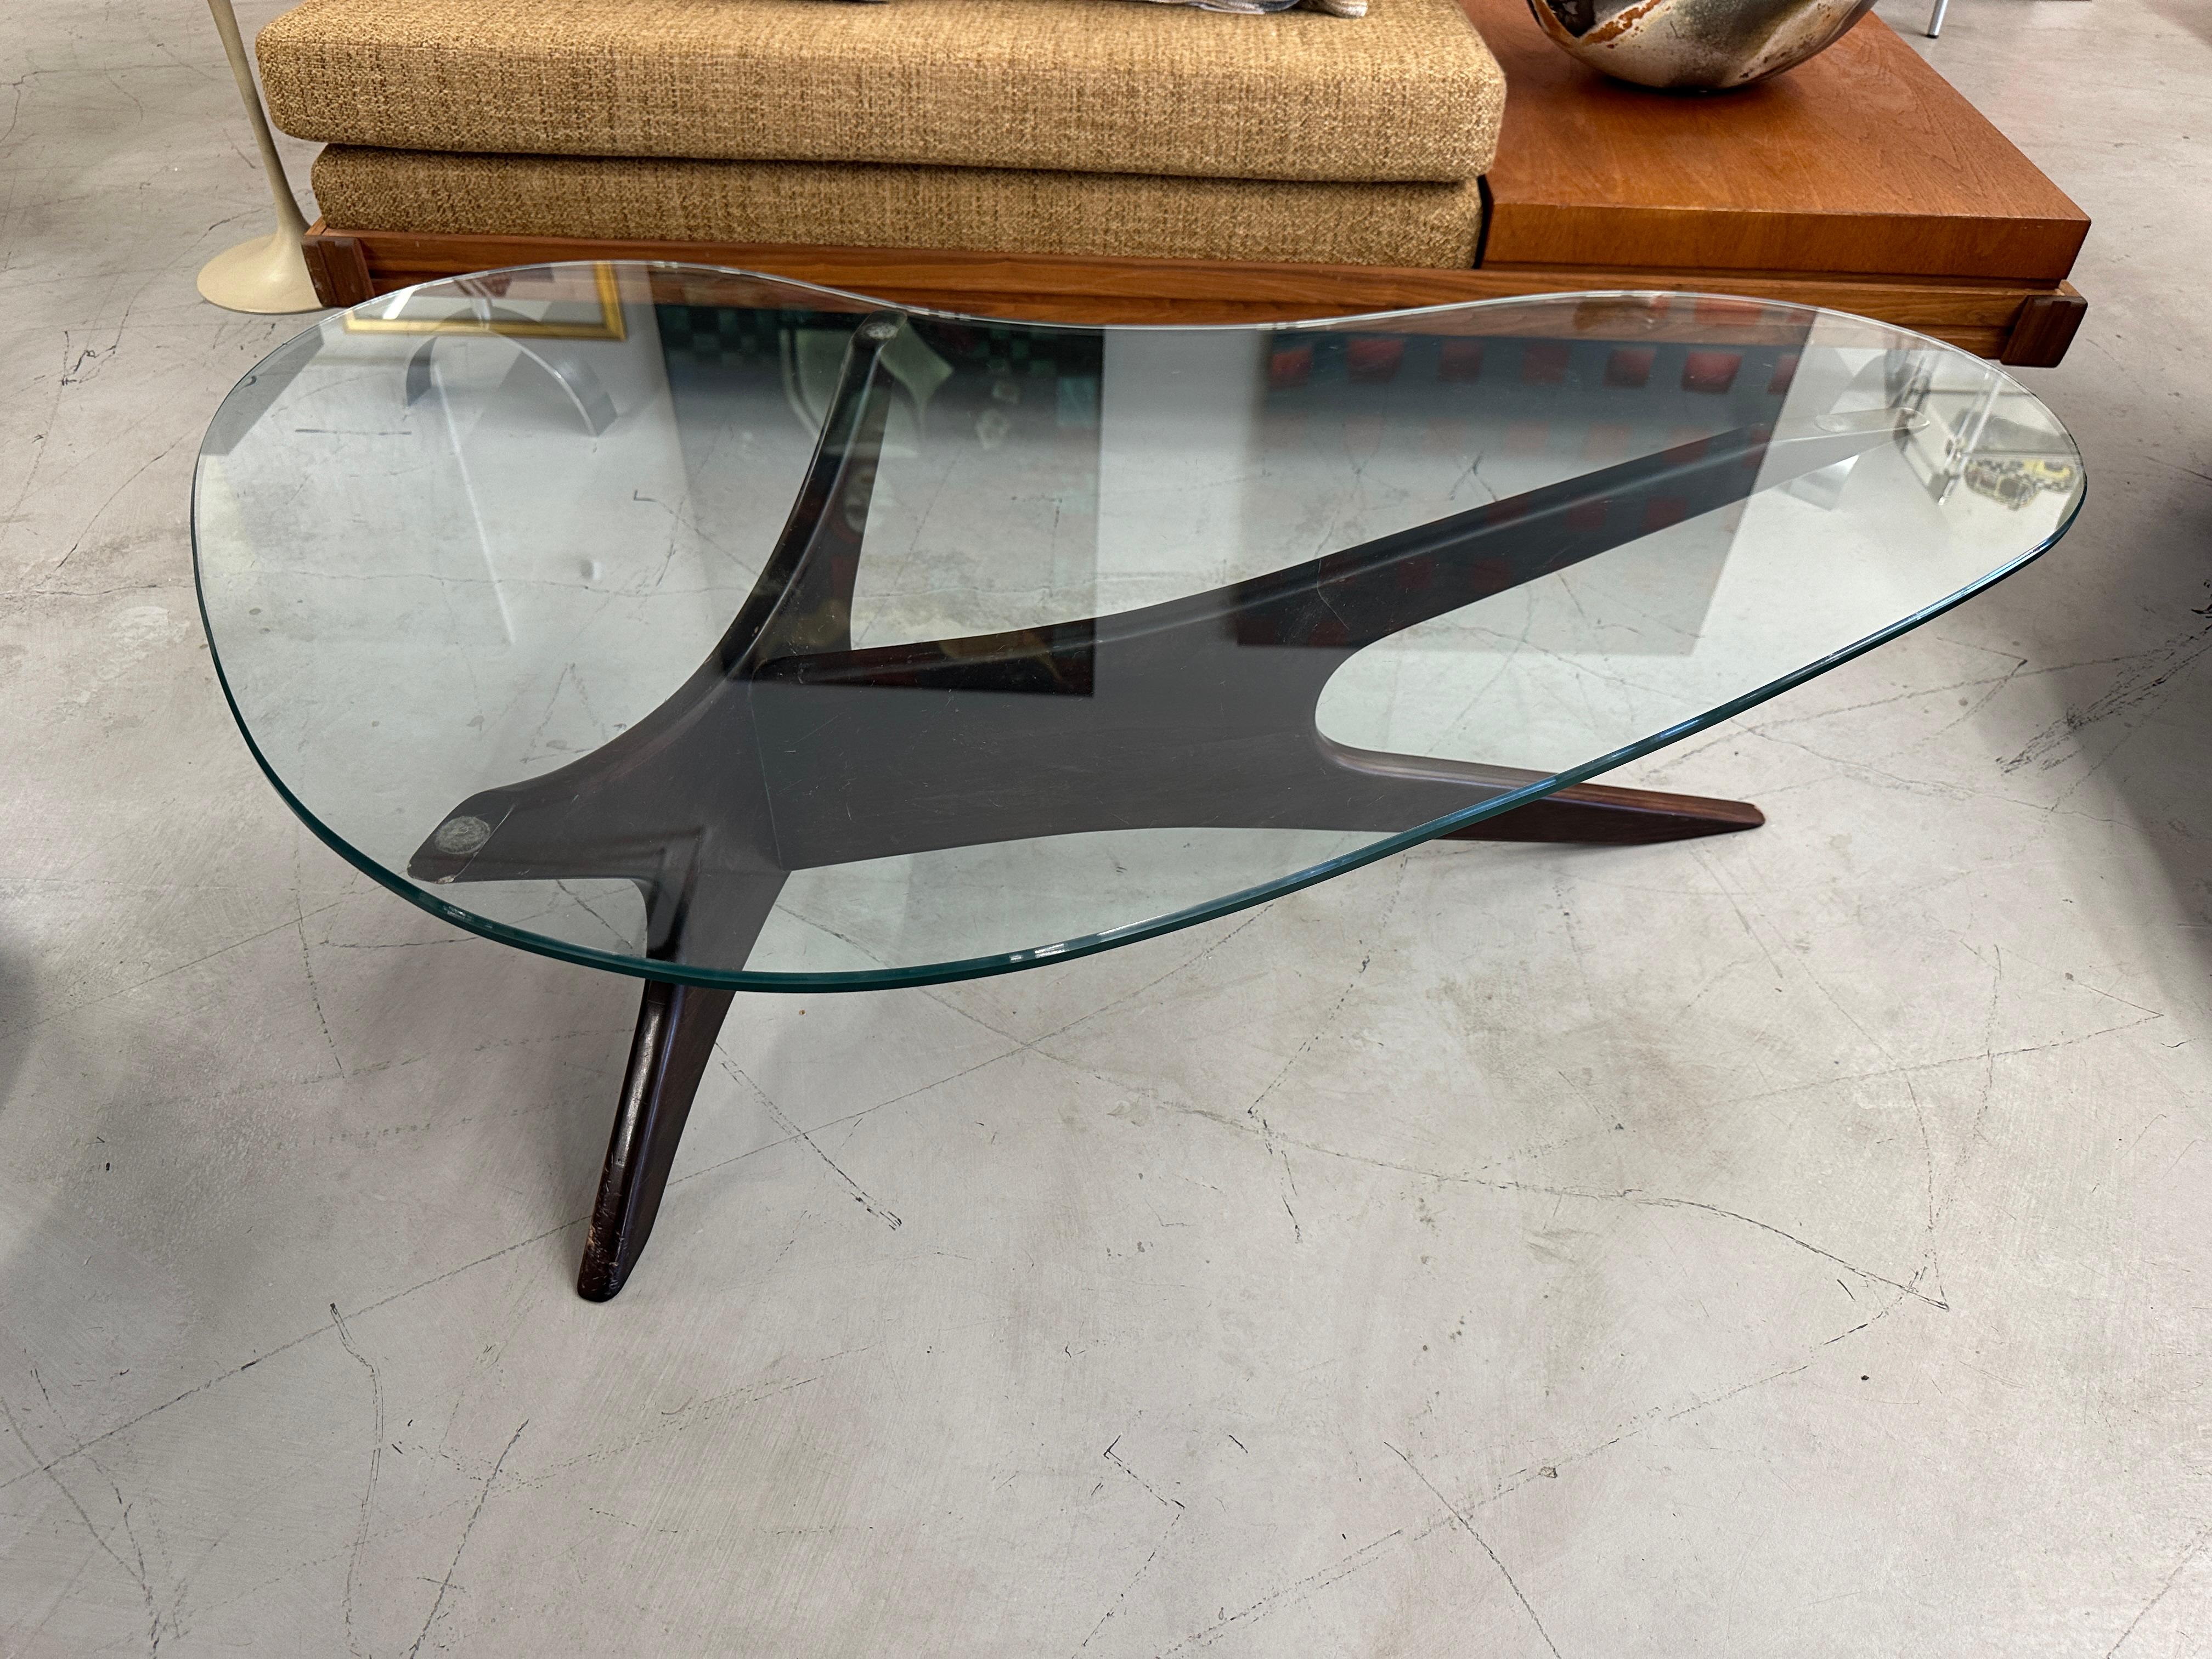 Une belle table basse iconique d'Adrian Pearsall pour Craft Associates. La partie supérieure comporte une pièce de verre biomorphique en forme de rein. Le verre est en bon état avec quelques petites rayures superficielles. Pas d'éclats sur les